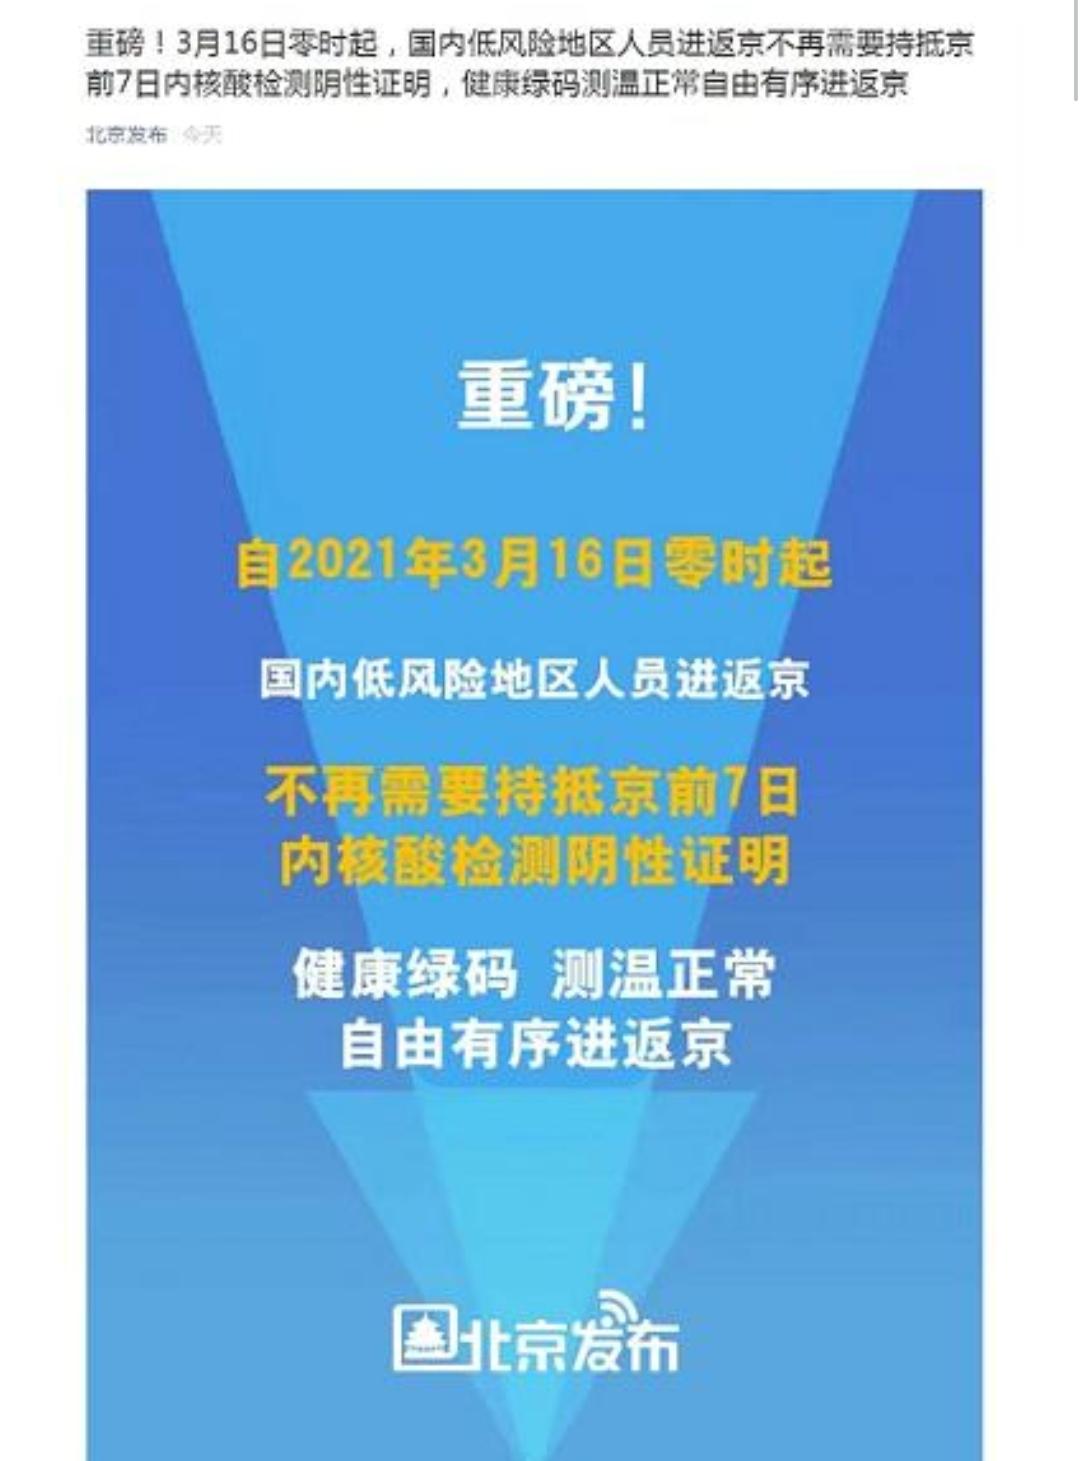 北京：16日起低风险地区人员进返京不再需要持抵京前7日内核酸检测阴性证明